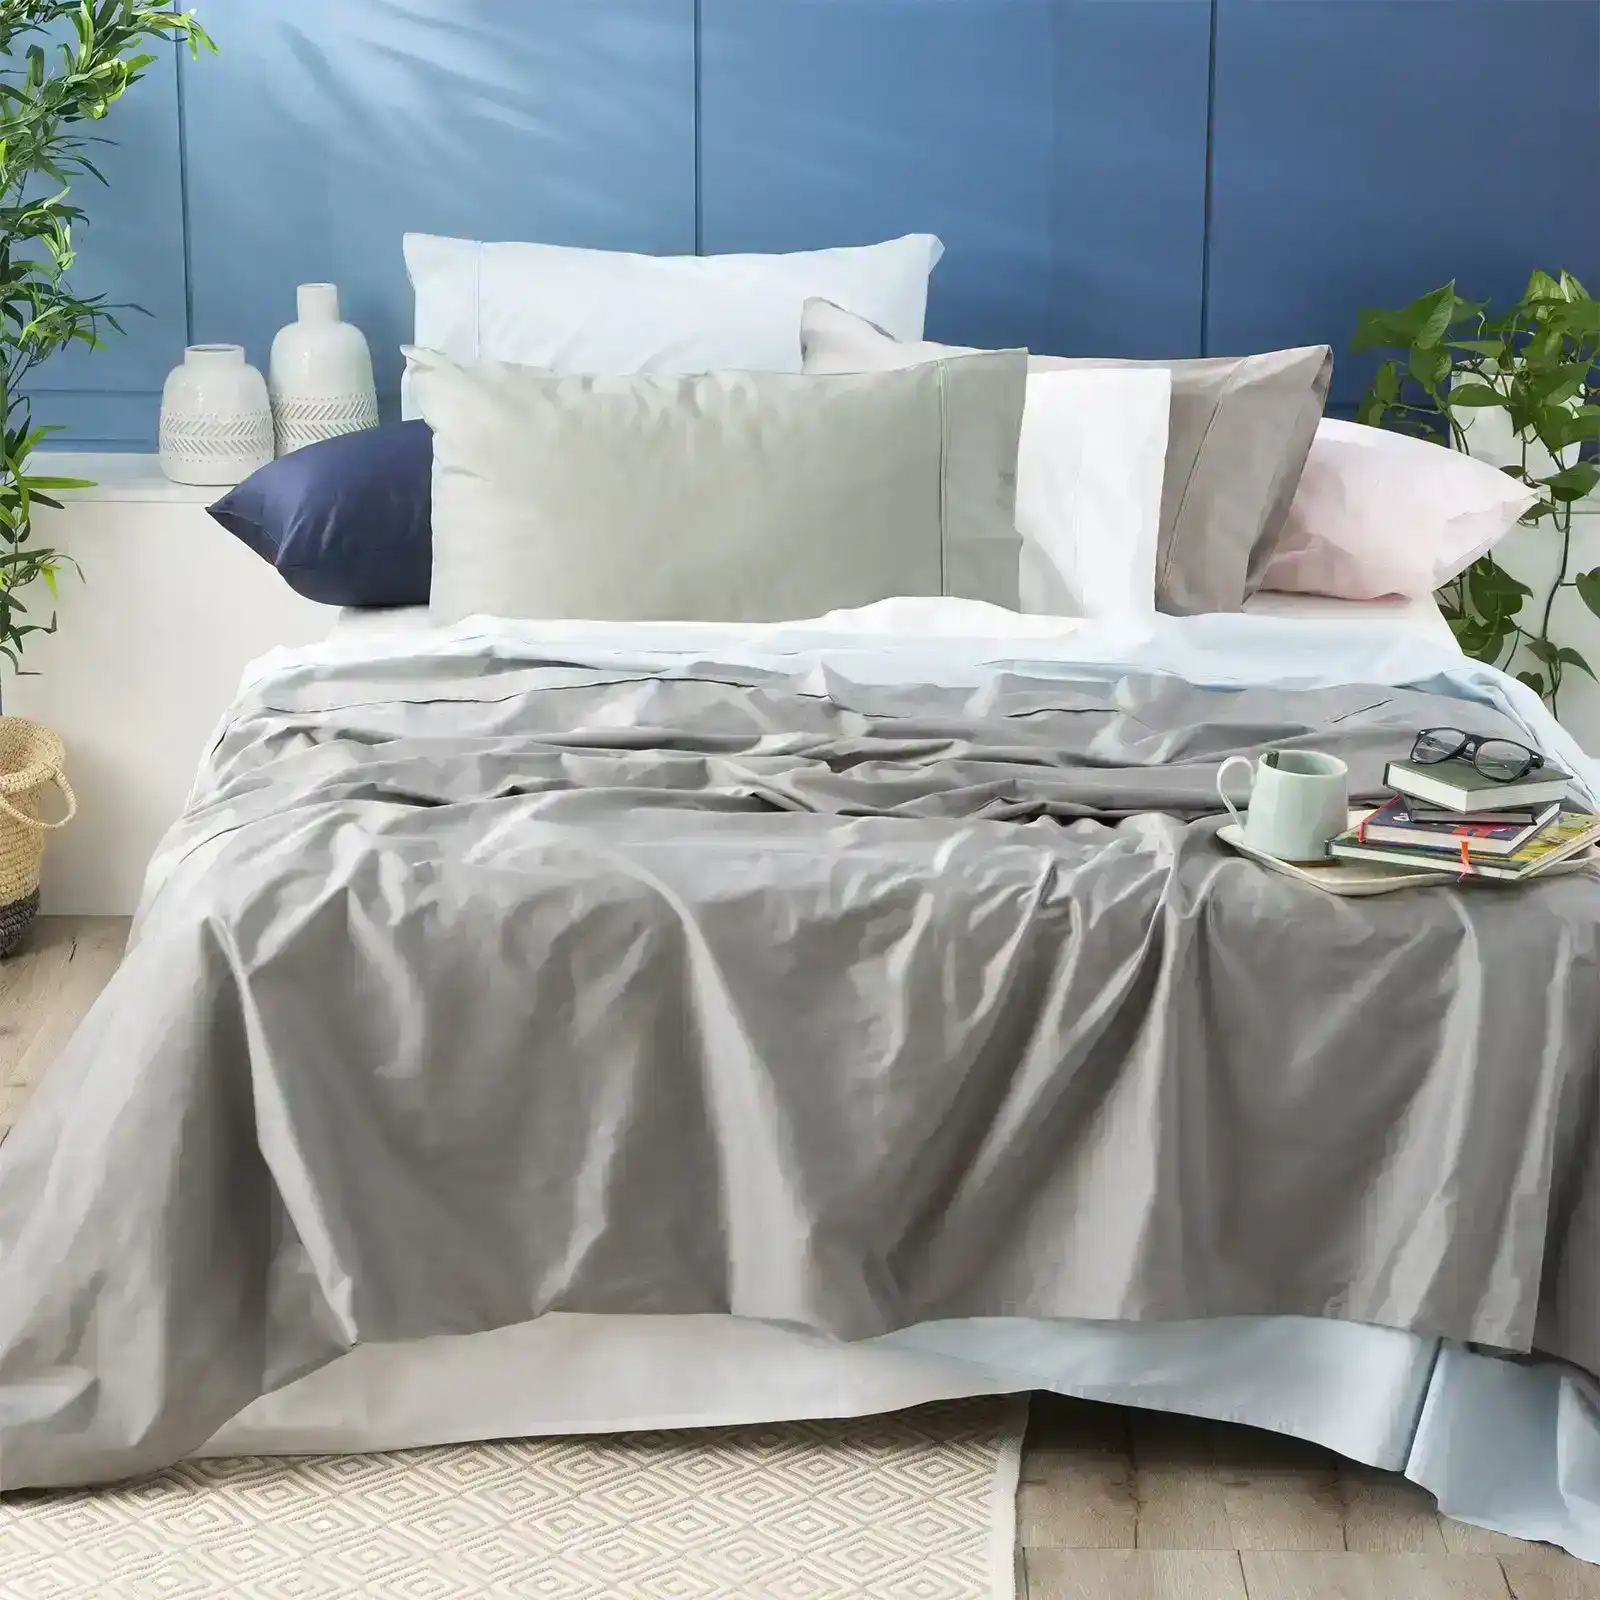 Park Avenue Mega Queen Bed Sheet/Pillowcase 500TC Bamboo Cotton Bedding Peach